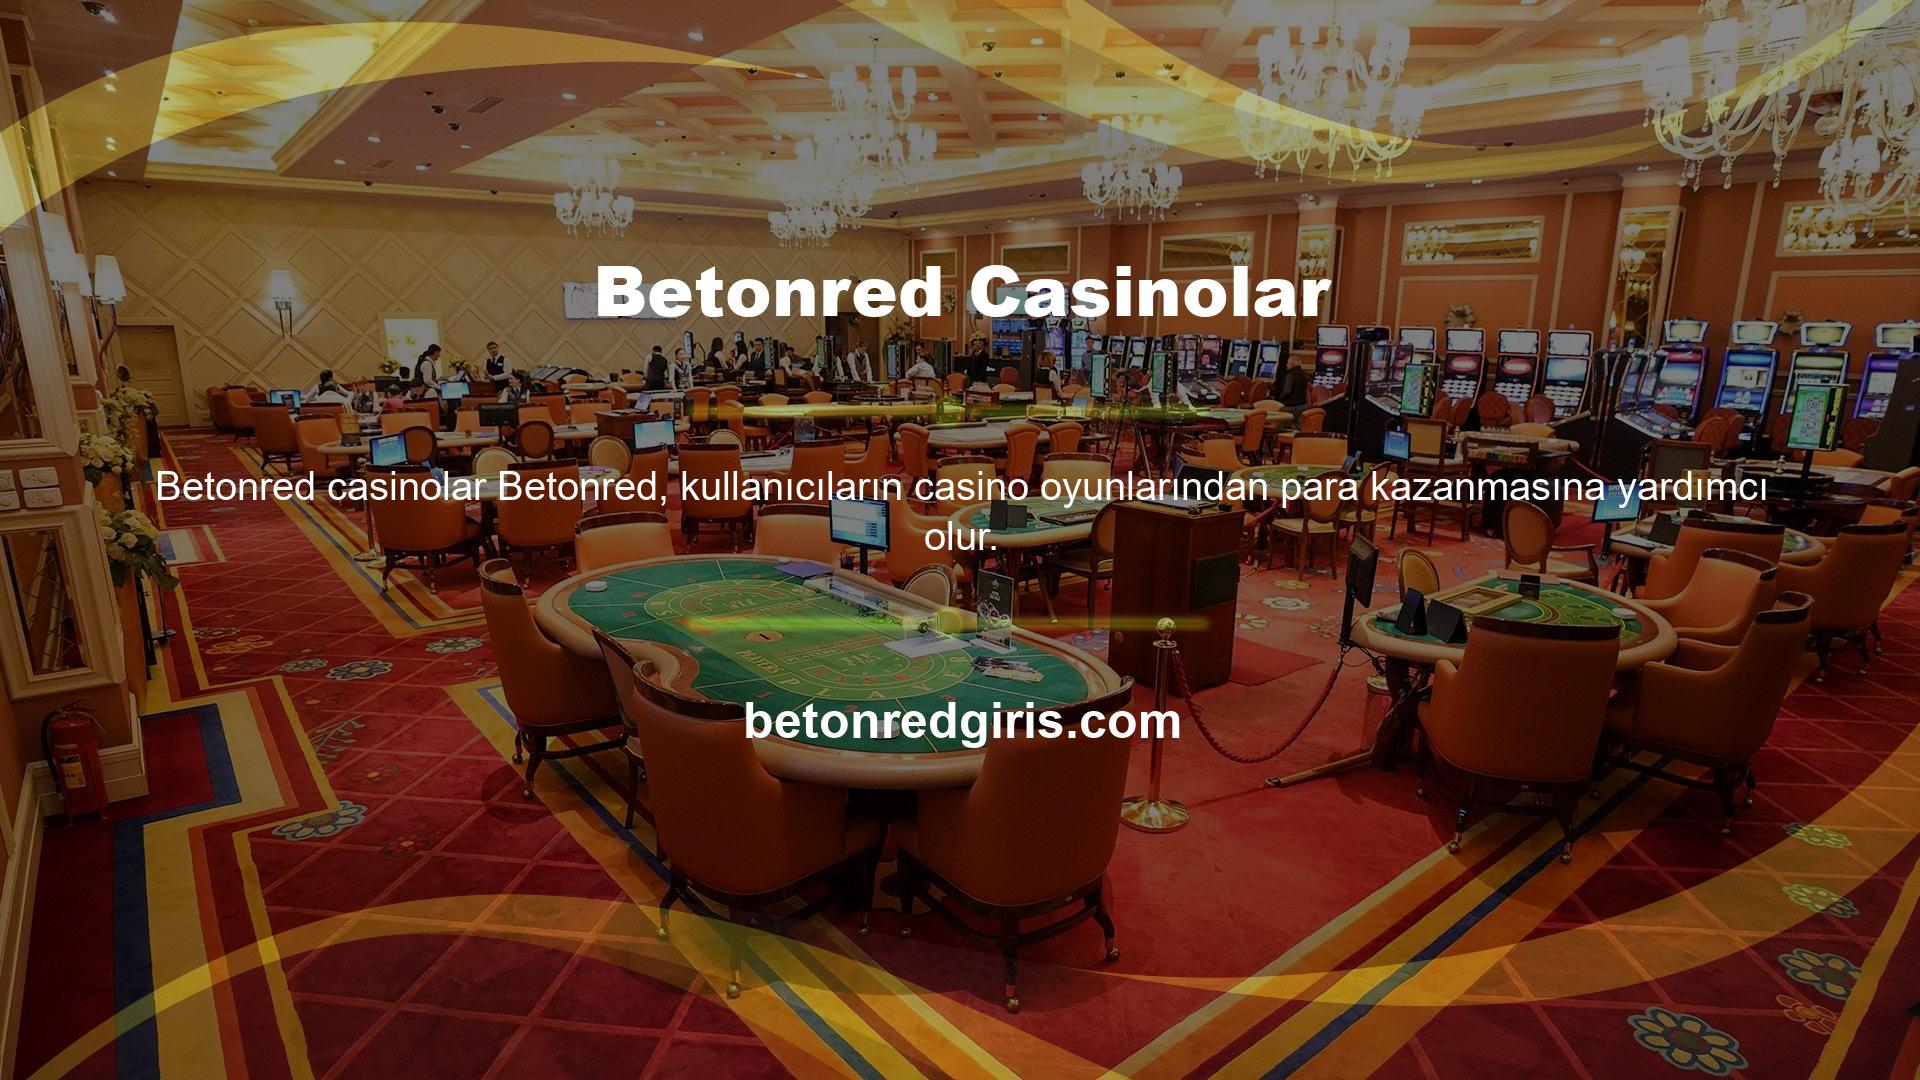 Betonred casinolar